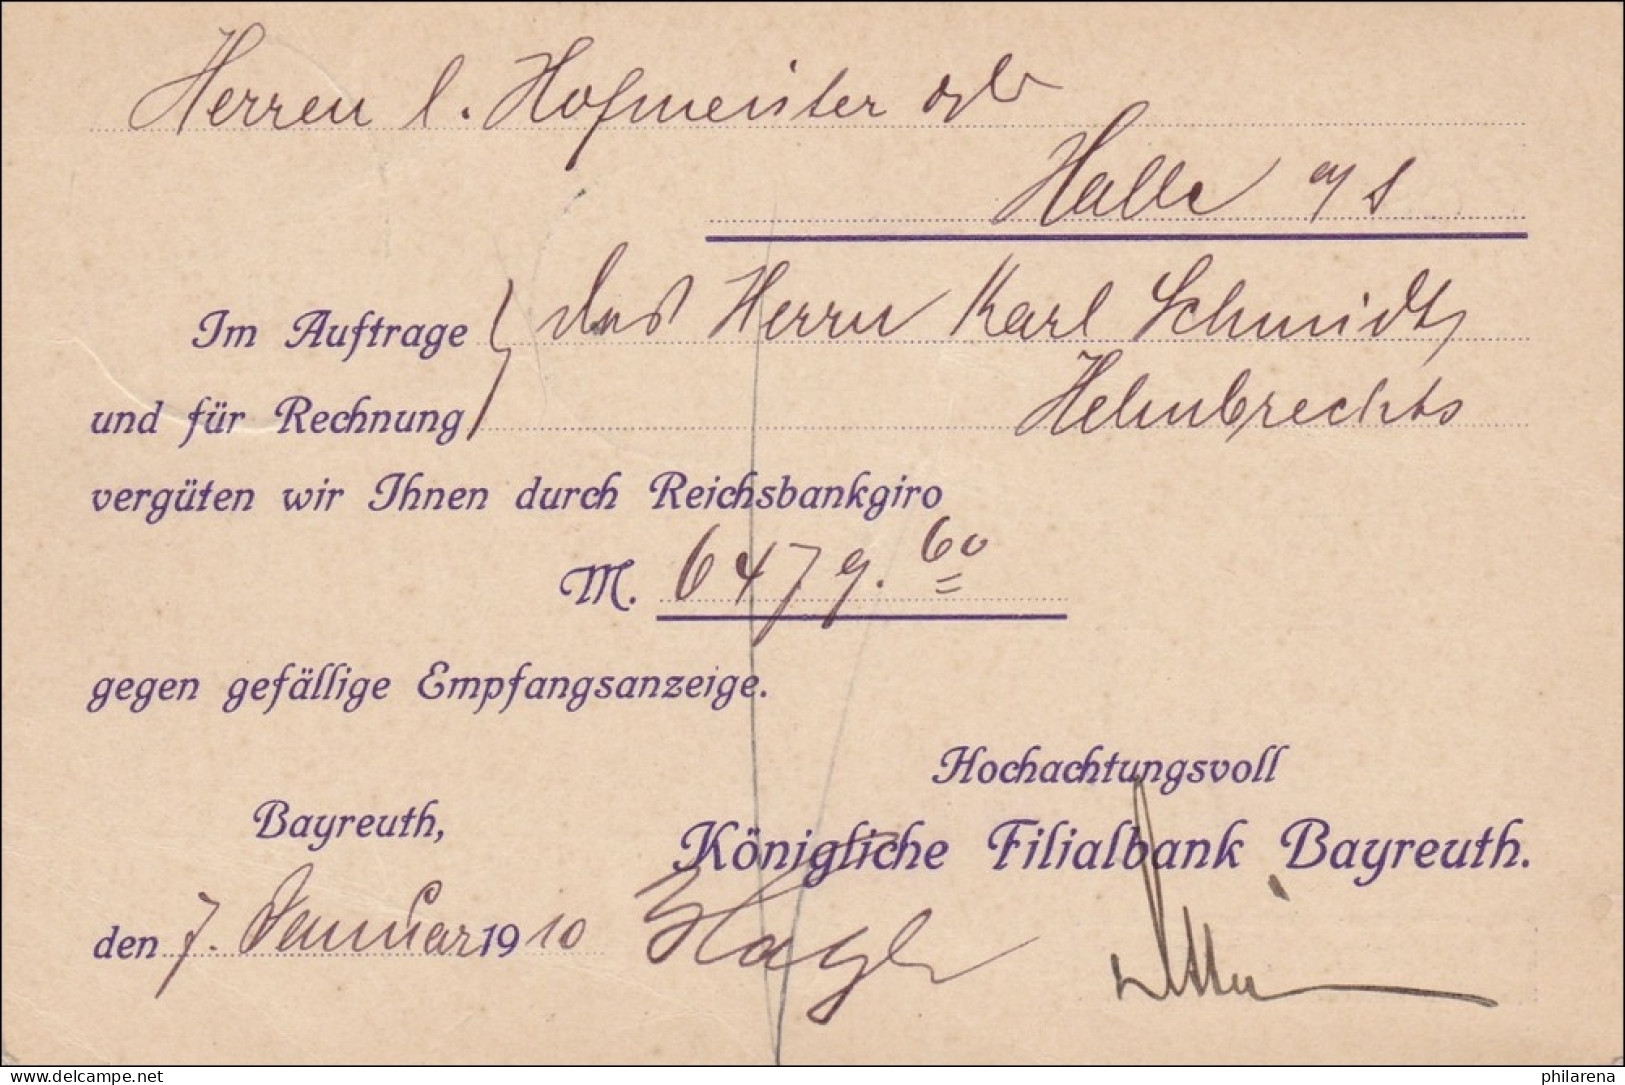 Frei Durch Ablösung ... Bayreuth Nach Halle 1910 - Lettres & Documents